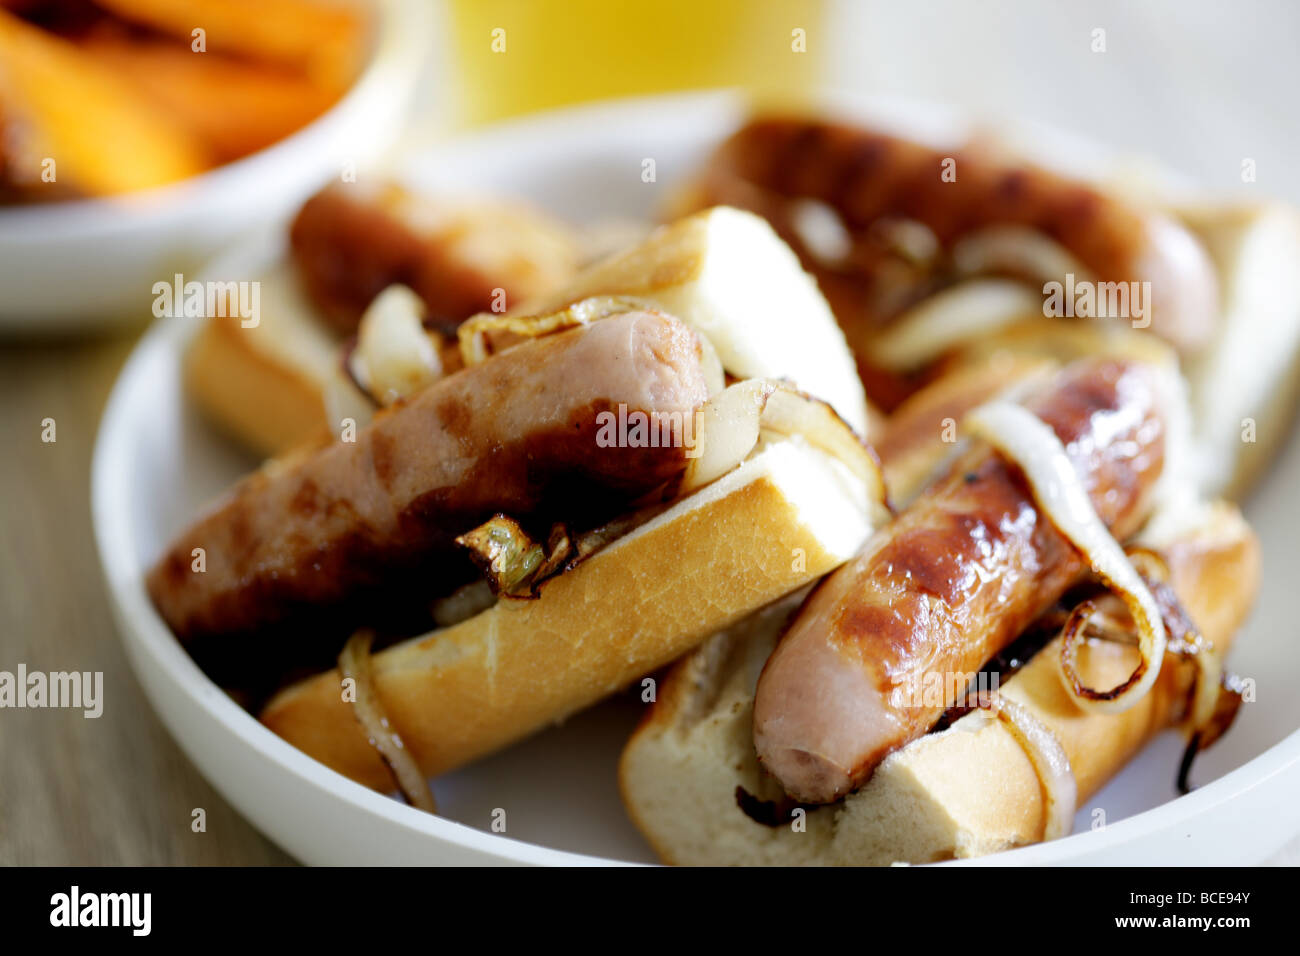 Frisch gekochte Wurst aus Schweinefleisch Hot Dogs mit Zwiebeln in einem weißen Brot Crusty Roll serviert in einer Schüssel mit Keine Personen Stockfoto